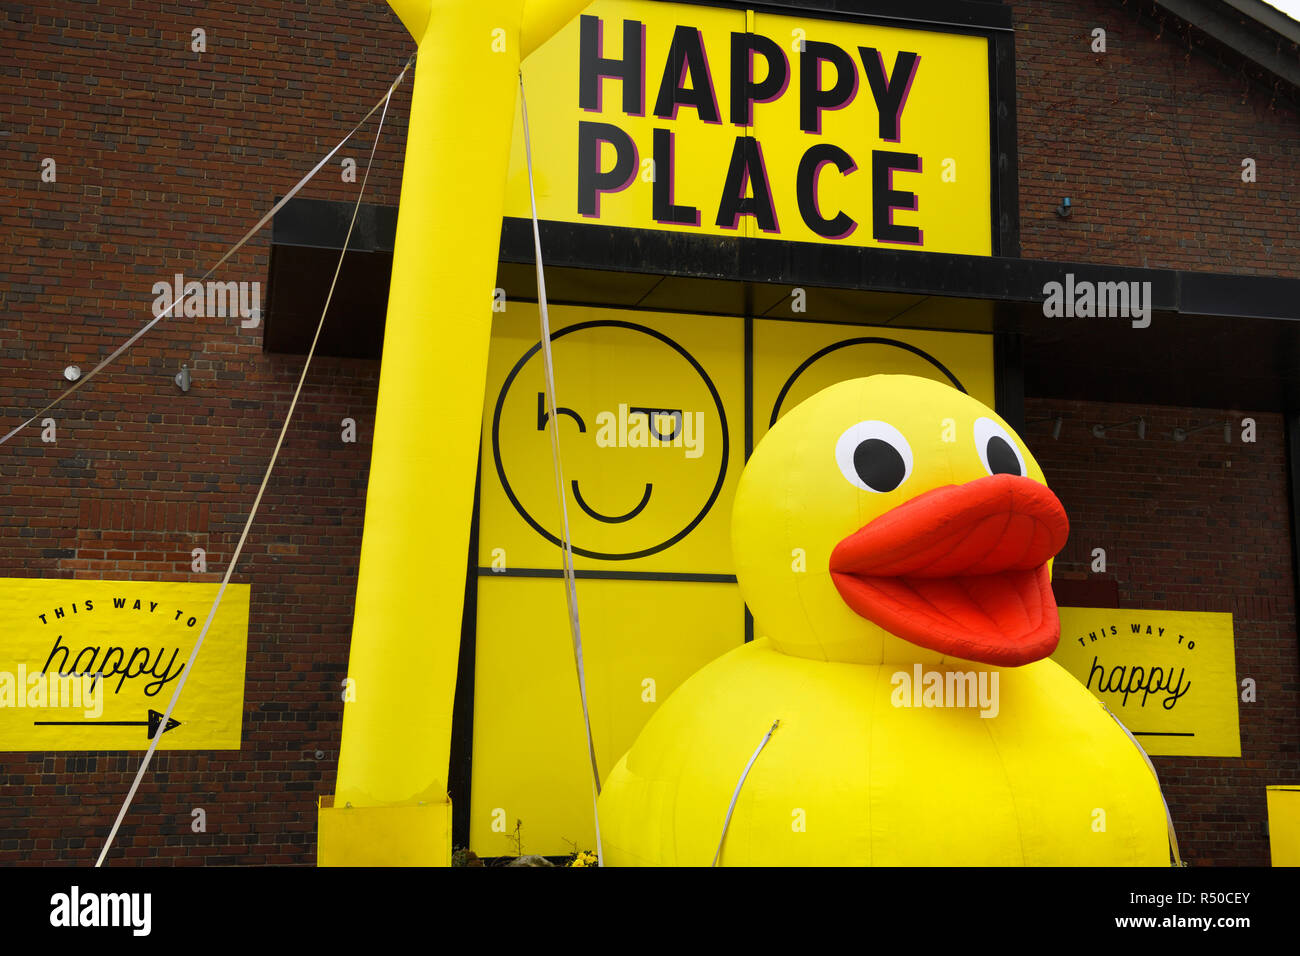 Gonfiabile gigante giallo anatra di gomma al posto felice pop-up arte interattiva installazione a Toronto Harbourfront Center Foto Stock